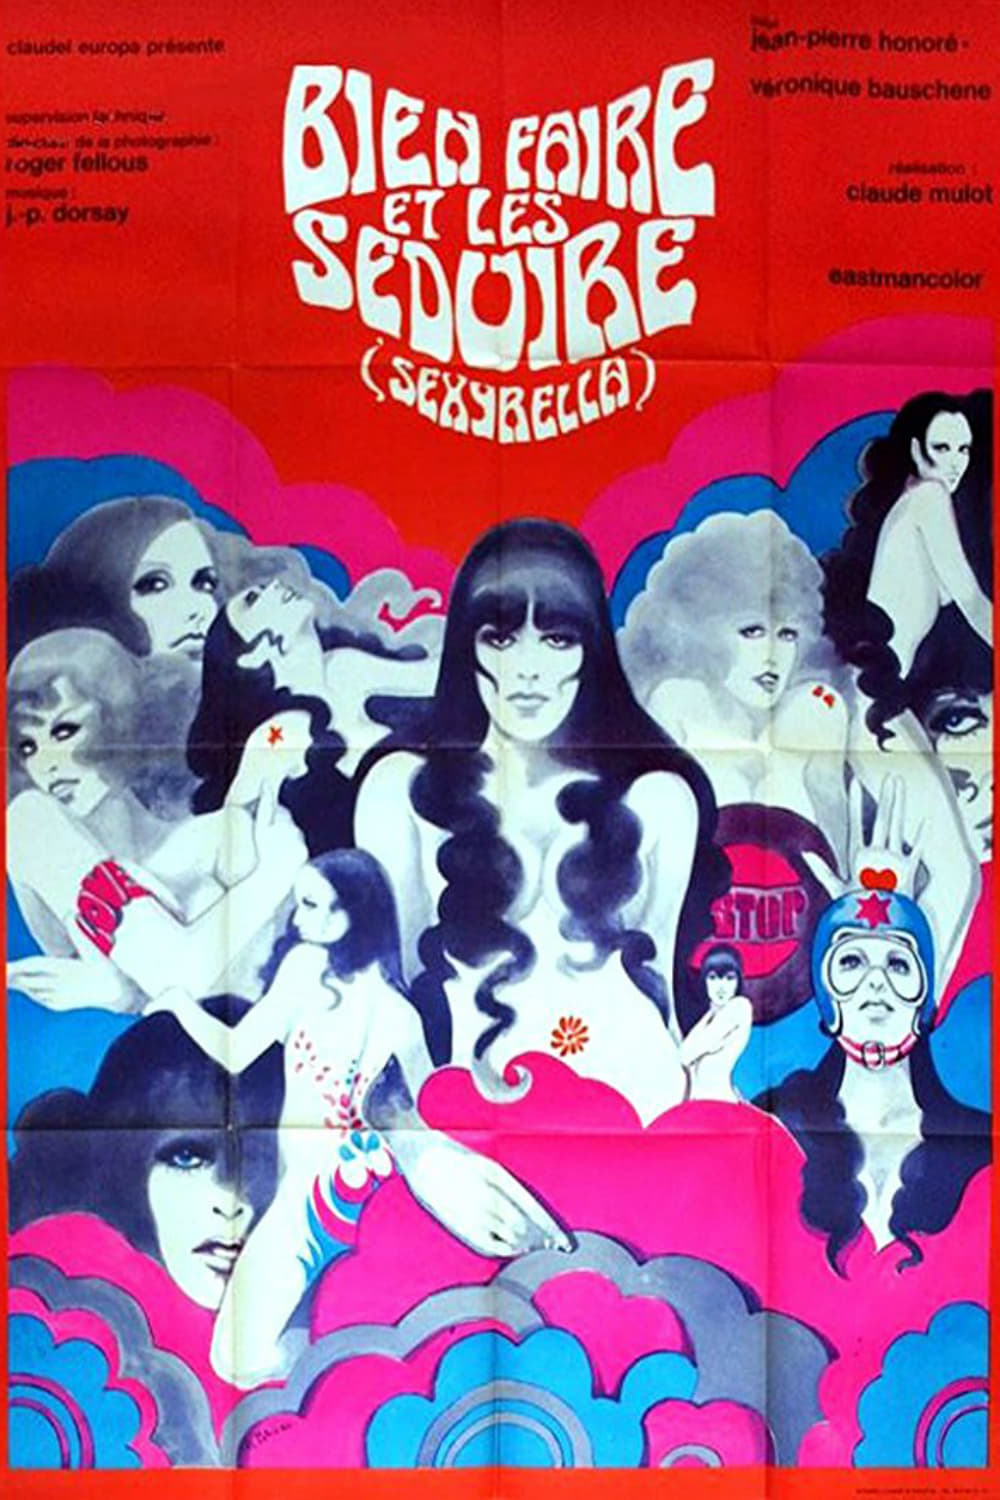 Sexyrella (1968)